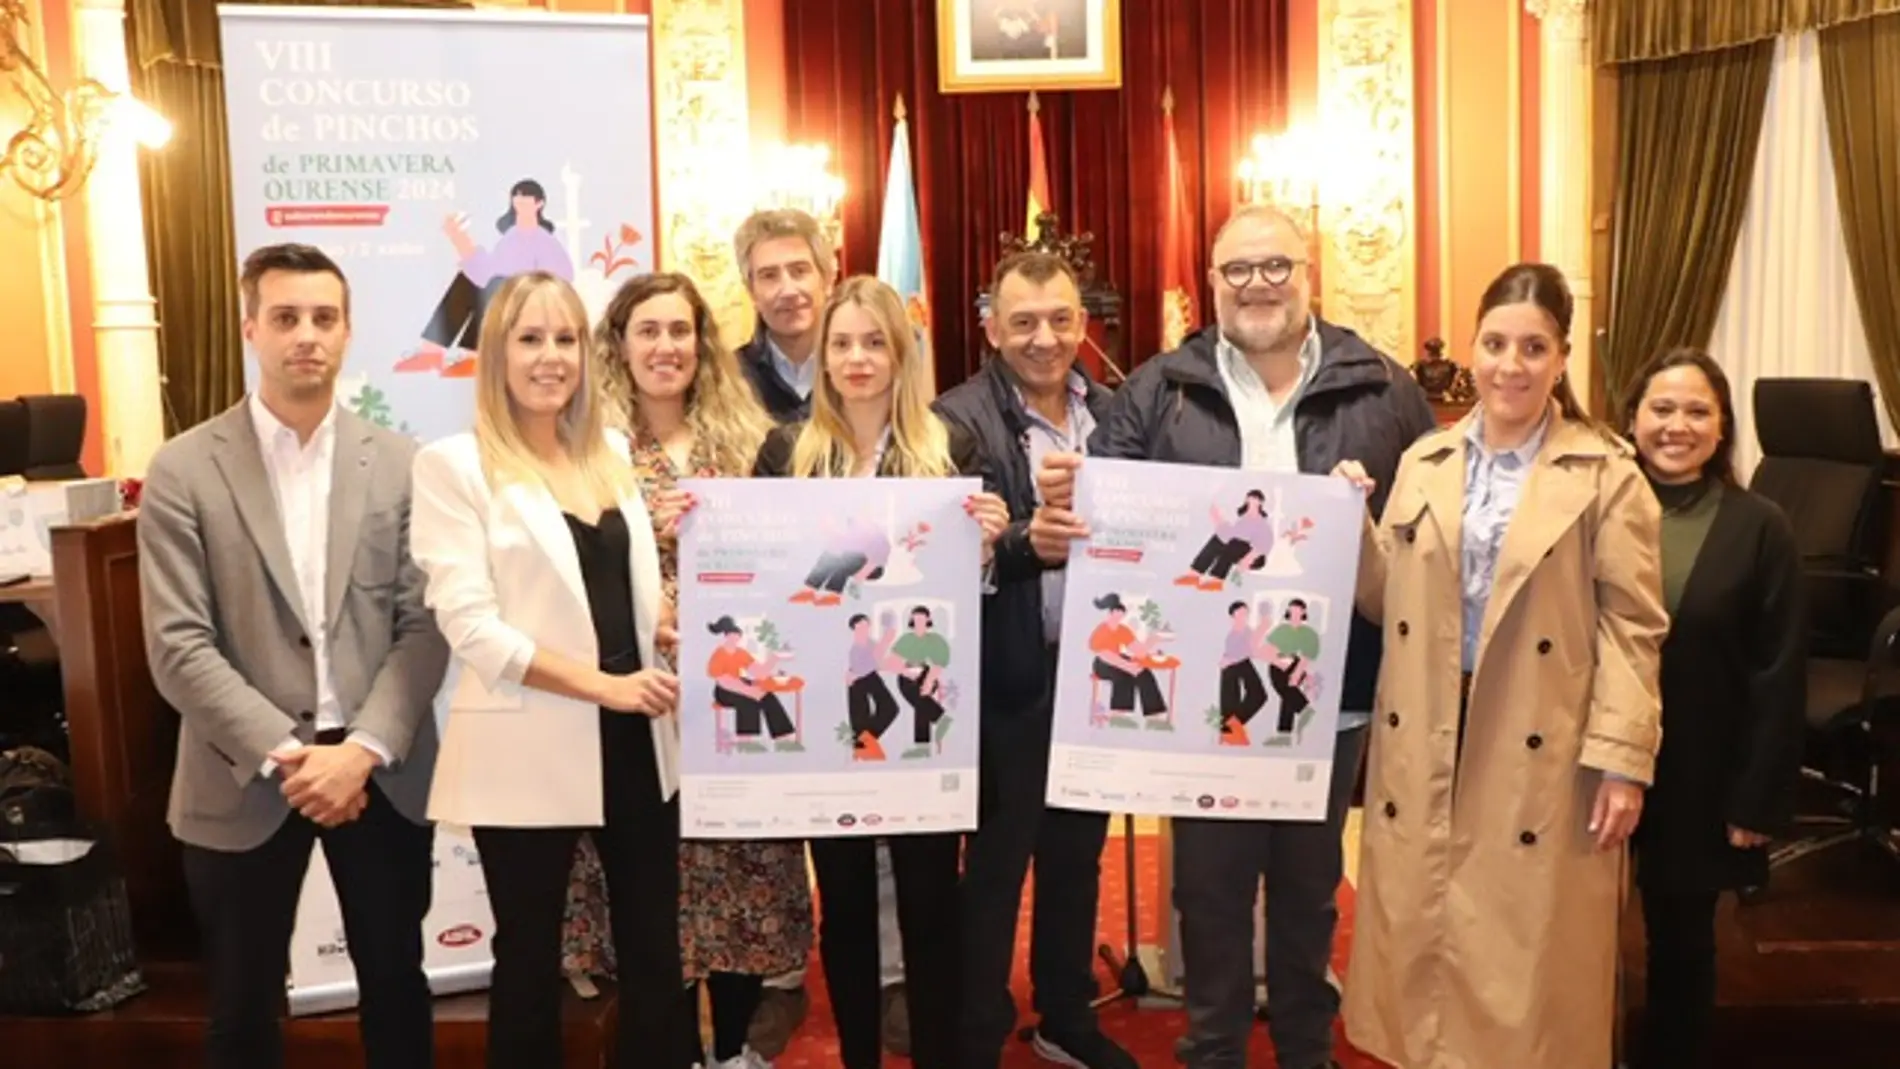 O Concello organiza o concurso Sabores de Ourense - Pinchos de Primavera